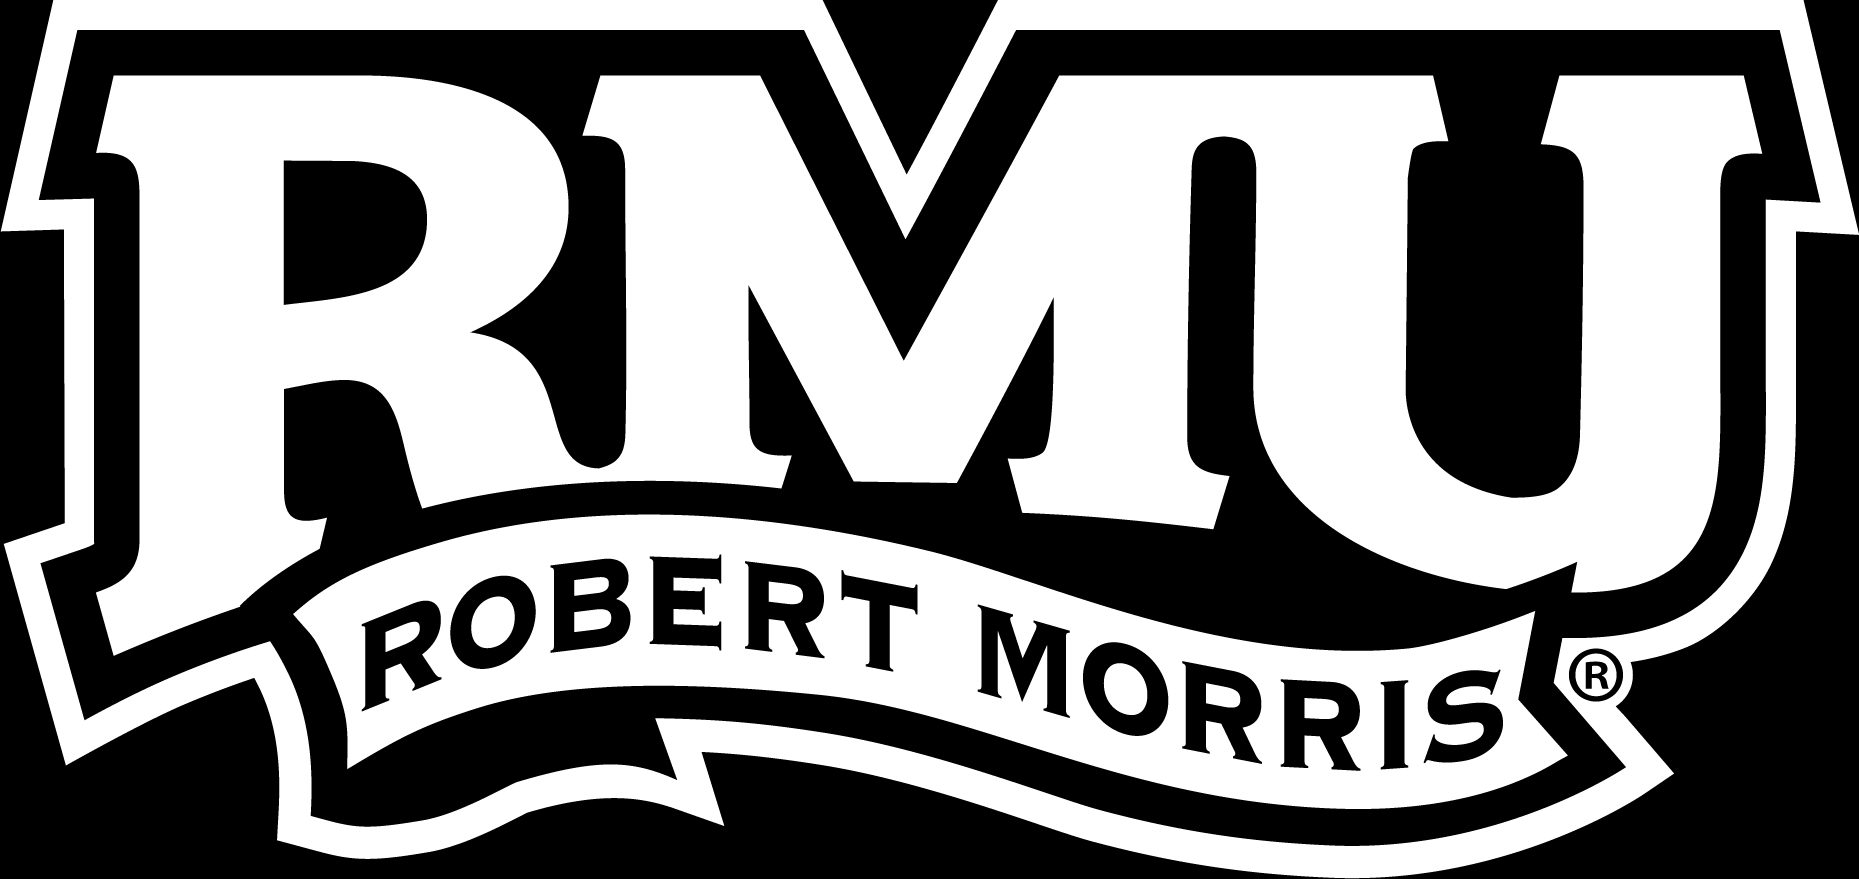 RMU Logo